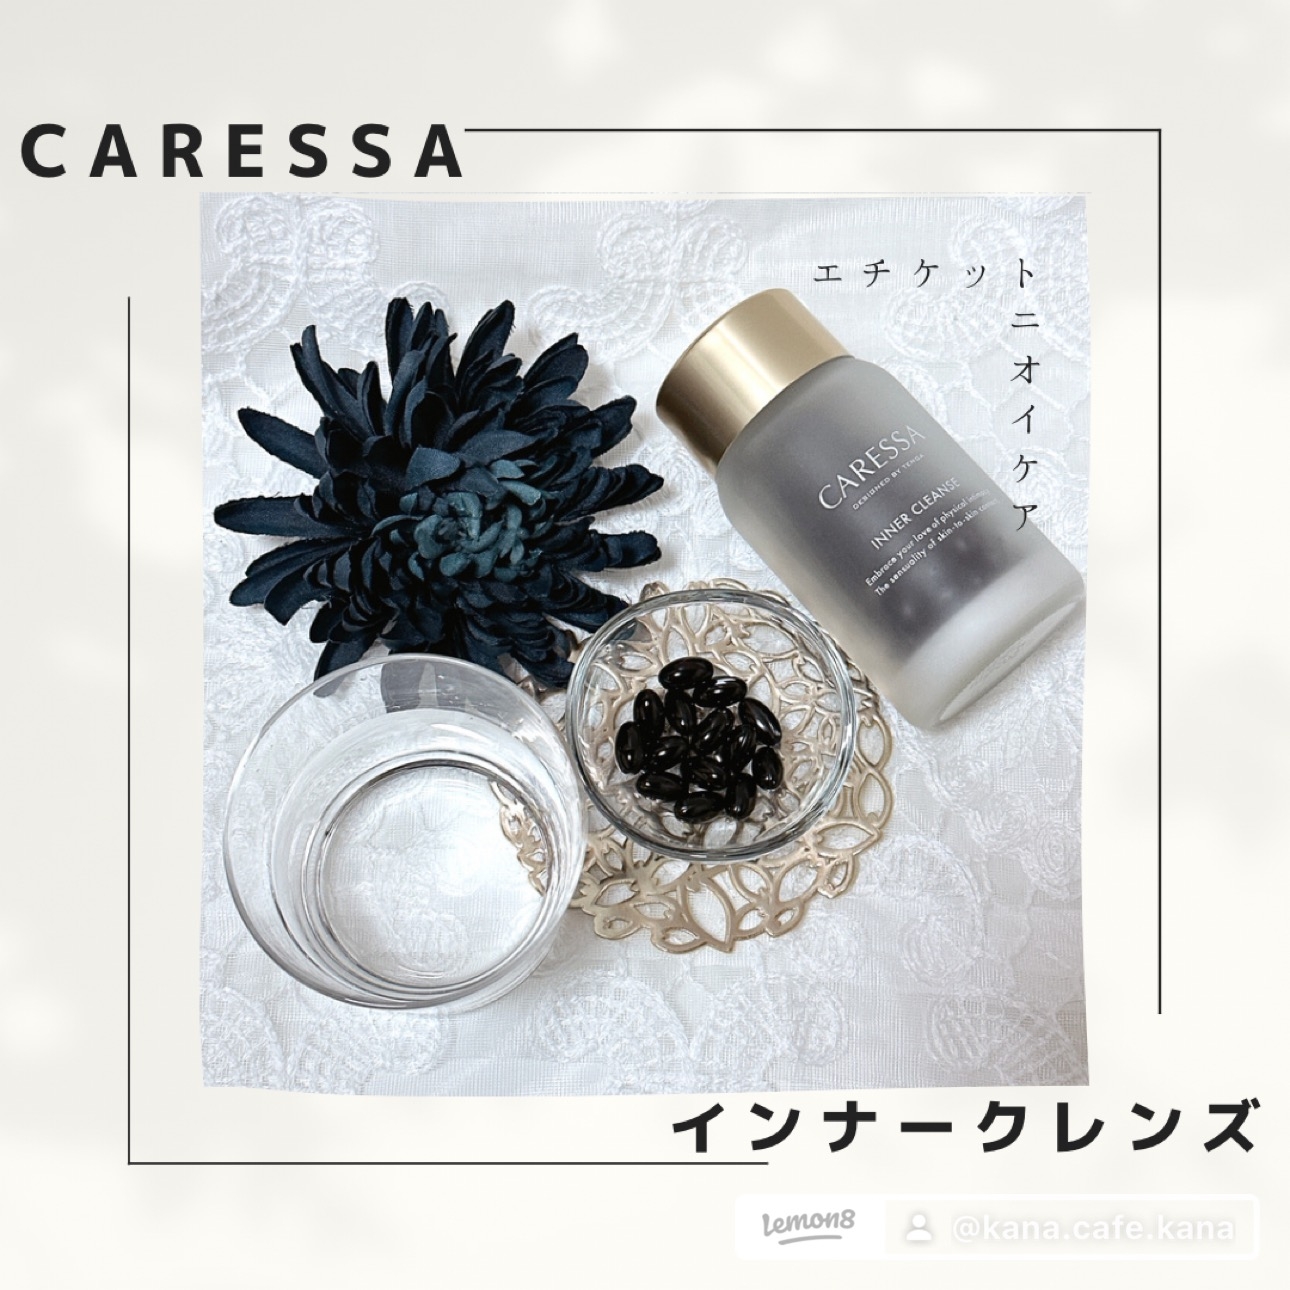 CARESSA(カレッサ) インナークレンズの良い点・メリットに関するkana_cafe_timeさんの口コミ画像1